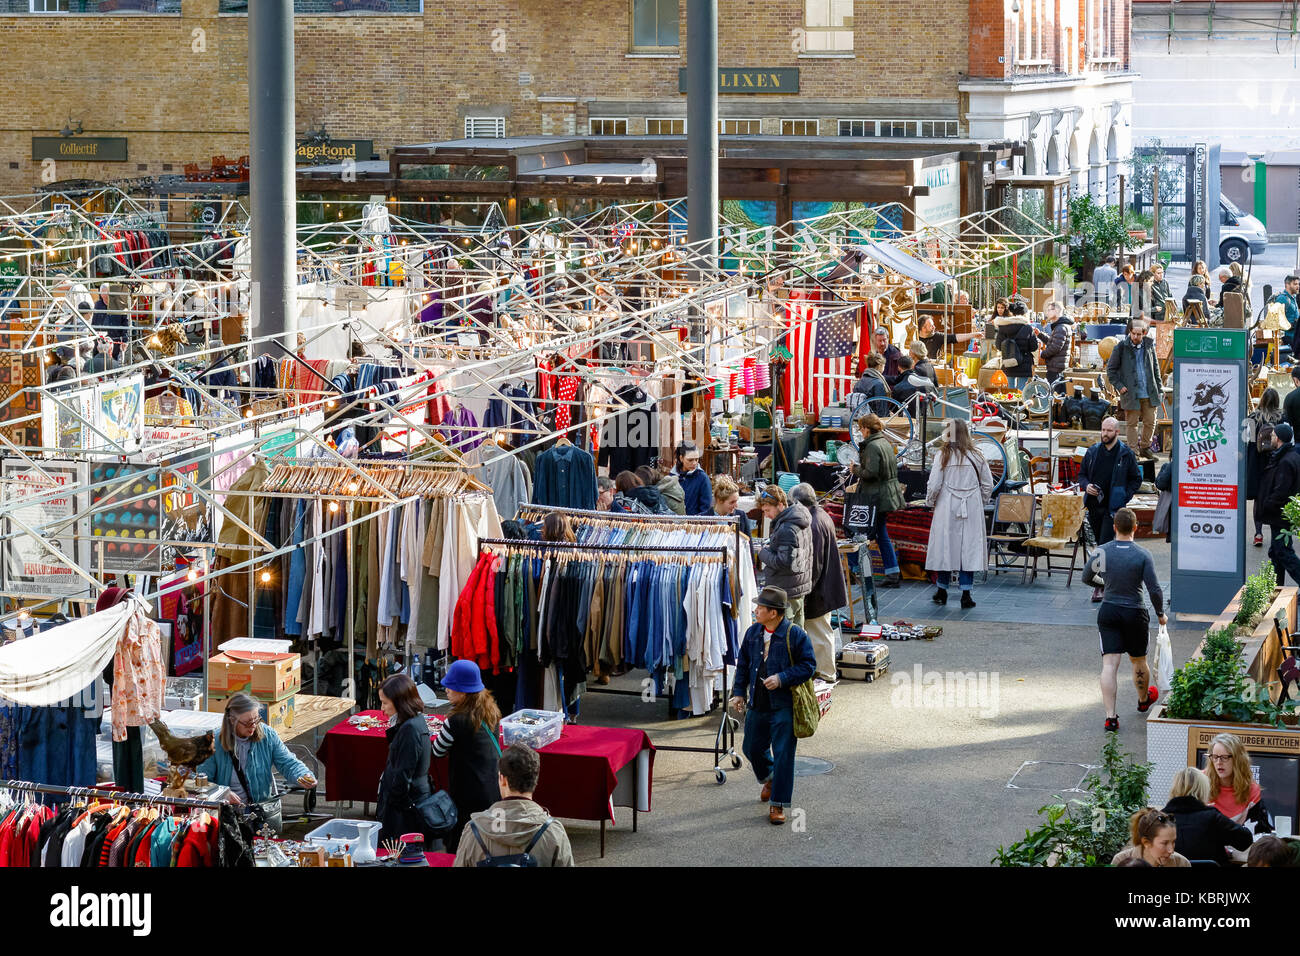 Londres, Royaume-Uni - 30 septembre 2017 - les gens du shopping au vieux marché de Spitalfields, un marché d'antiquités et vintage à Londres Banque D'Images